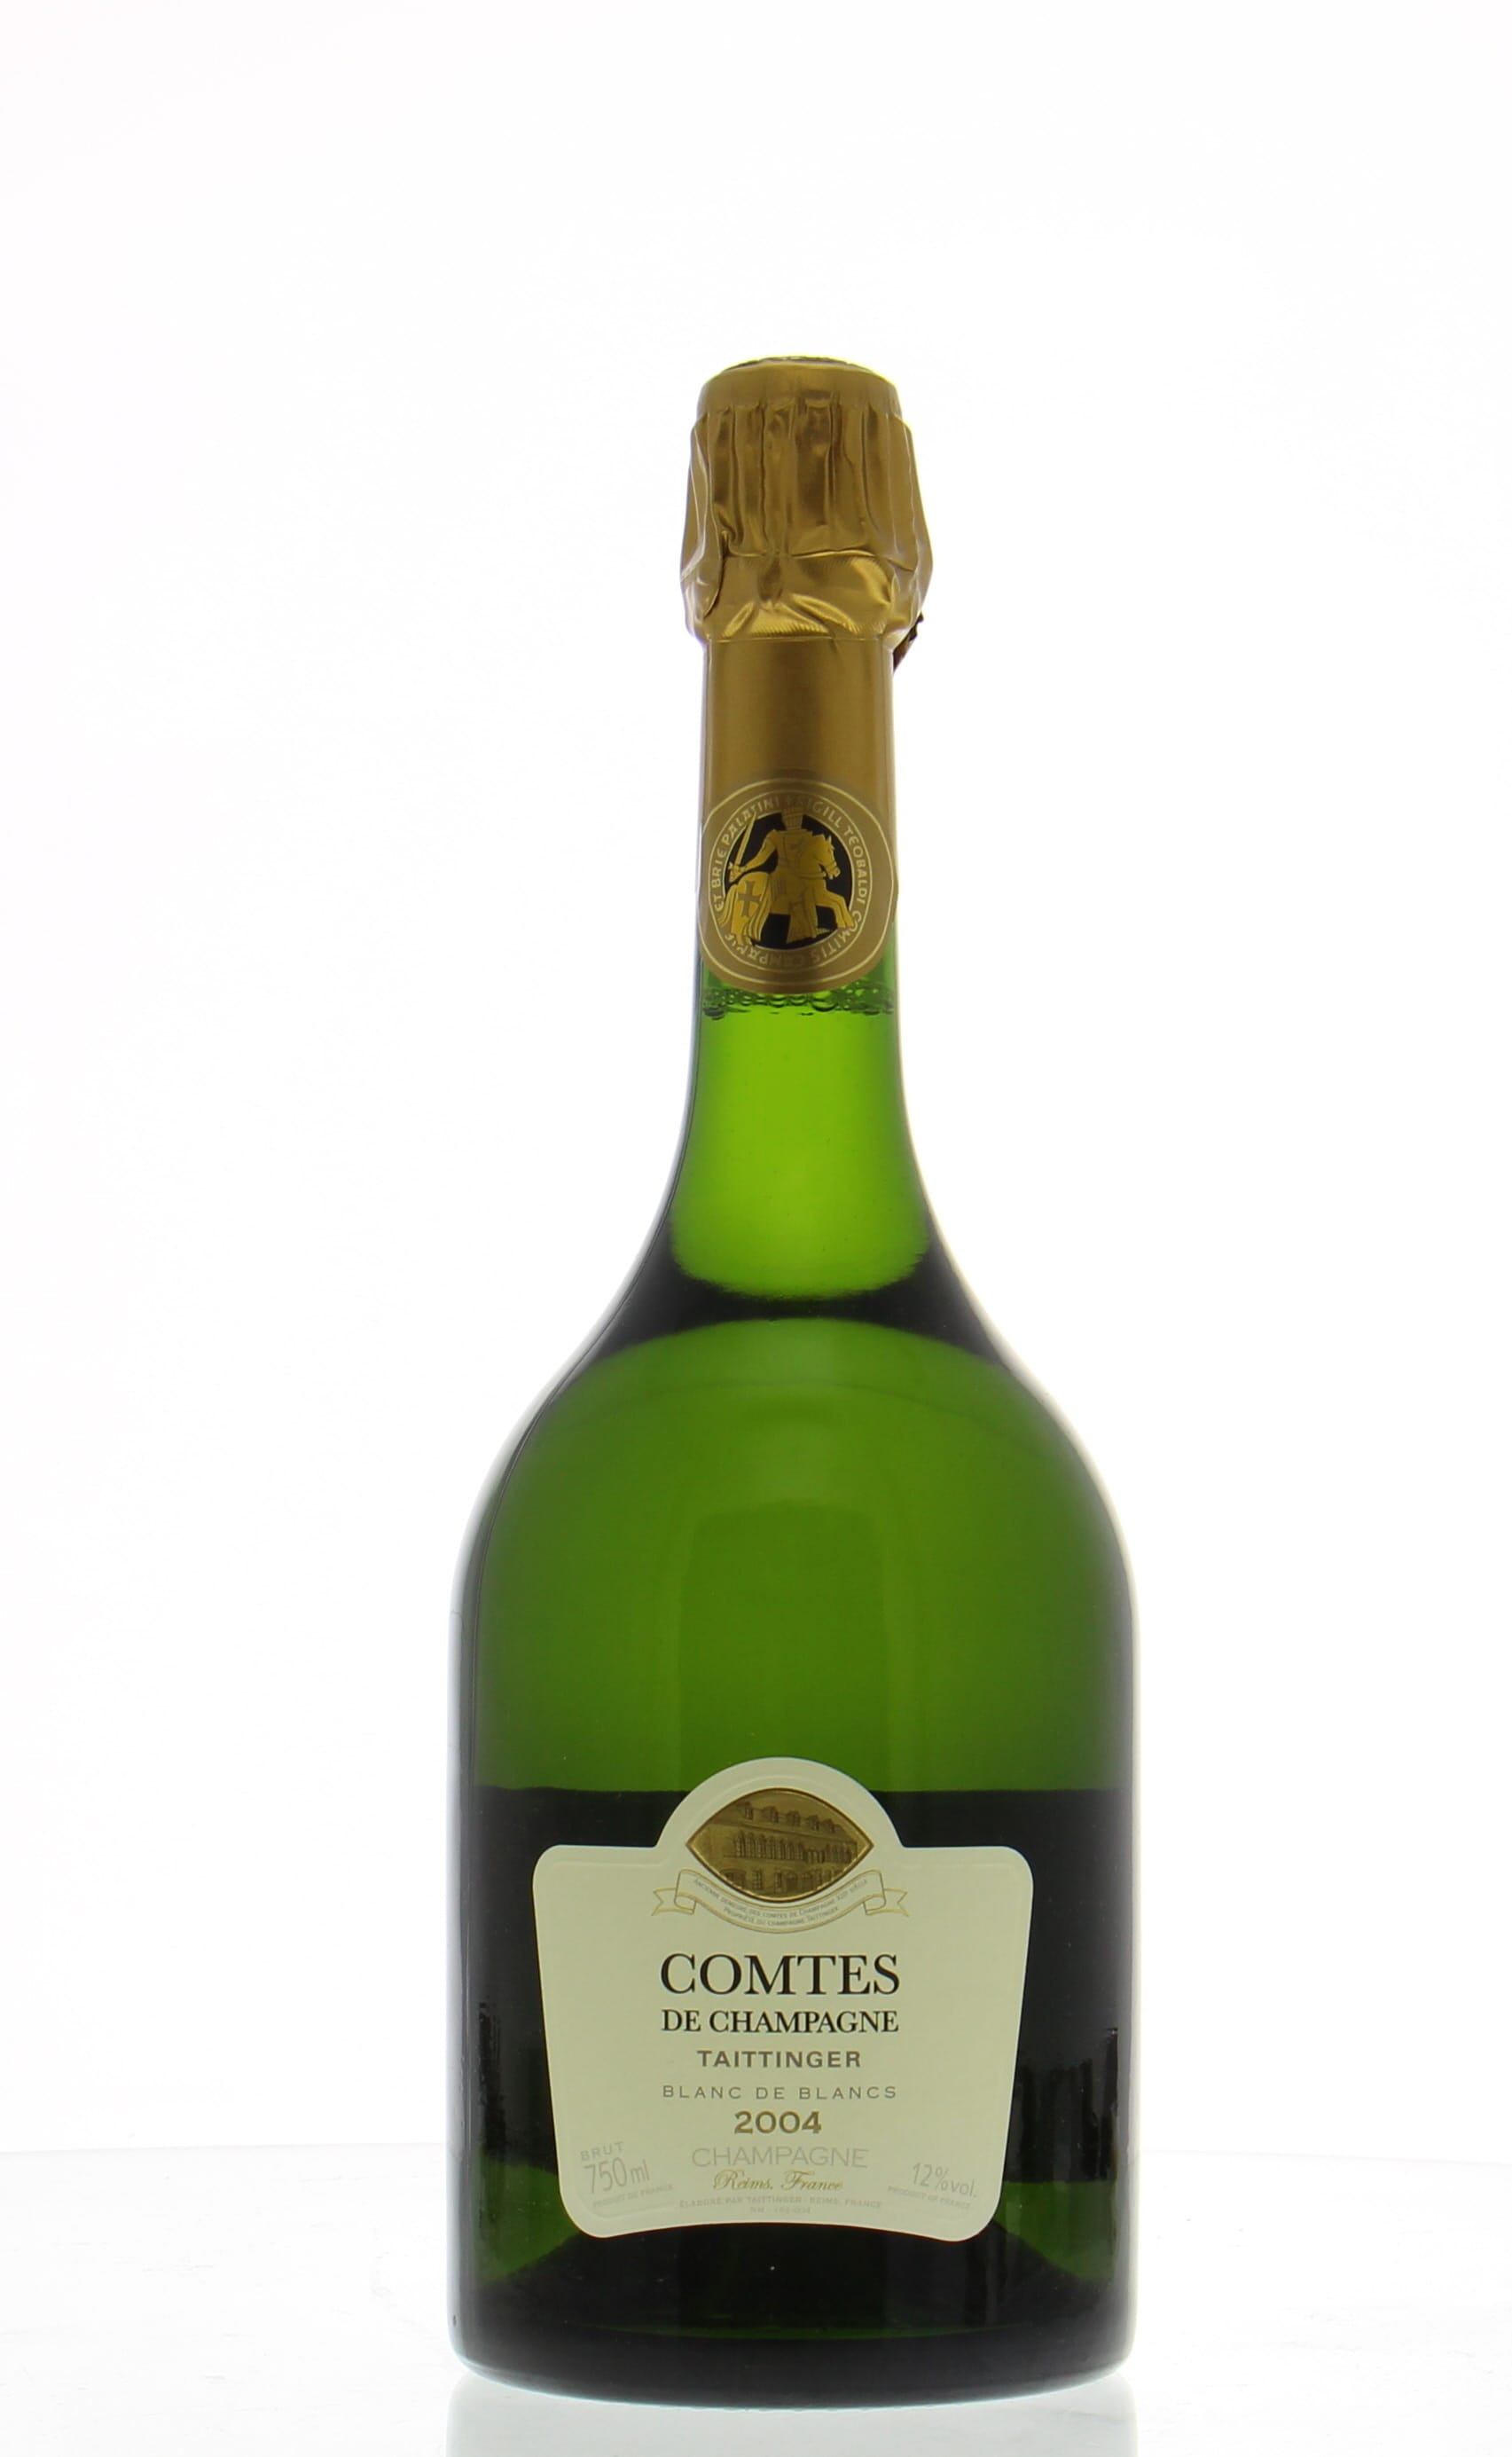 Taittinger - Comtes de Champagne Blanc de Blancs 2004 From Original Wooden Case